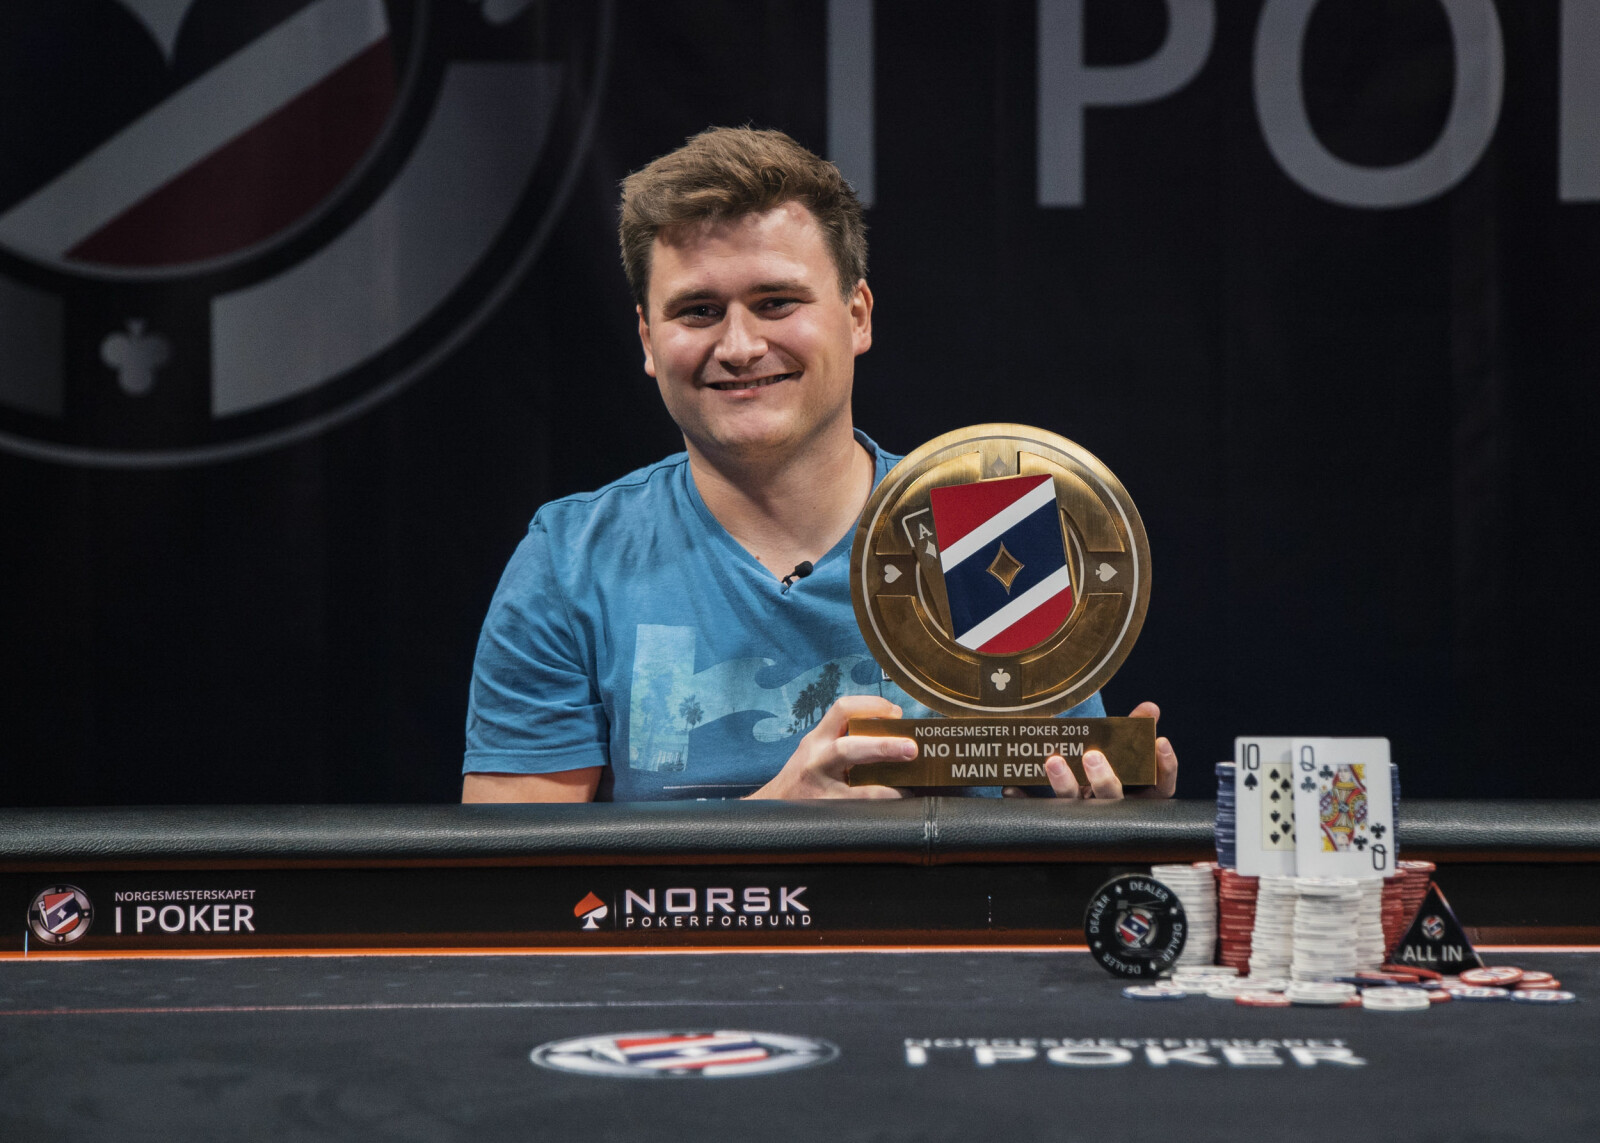 NORGESMESTER I POKER: Robert Kaggerud er vinner av Norgesmesterskapet i poker 2018.